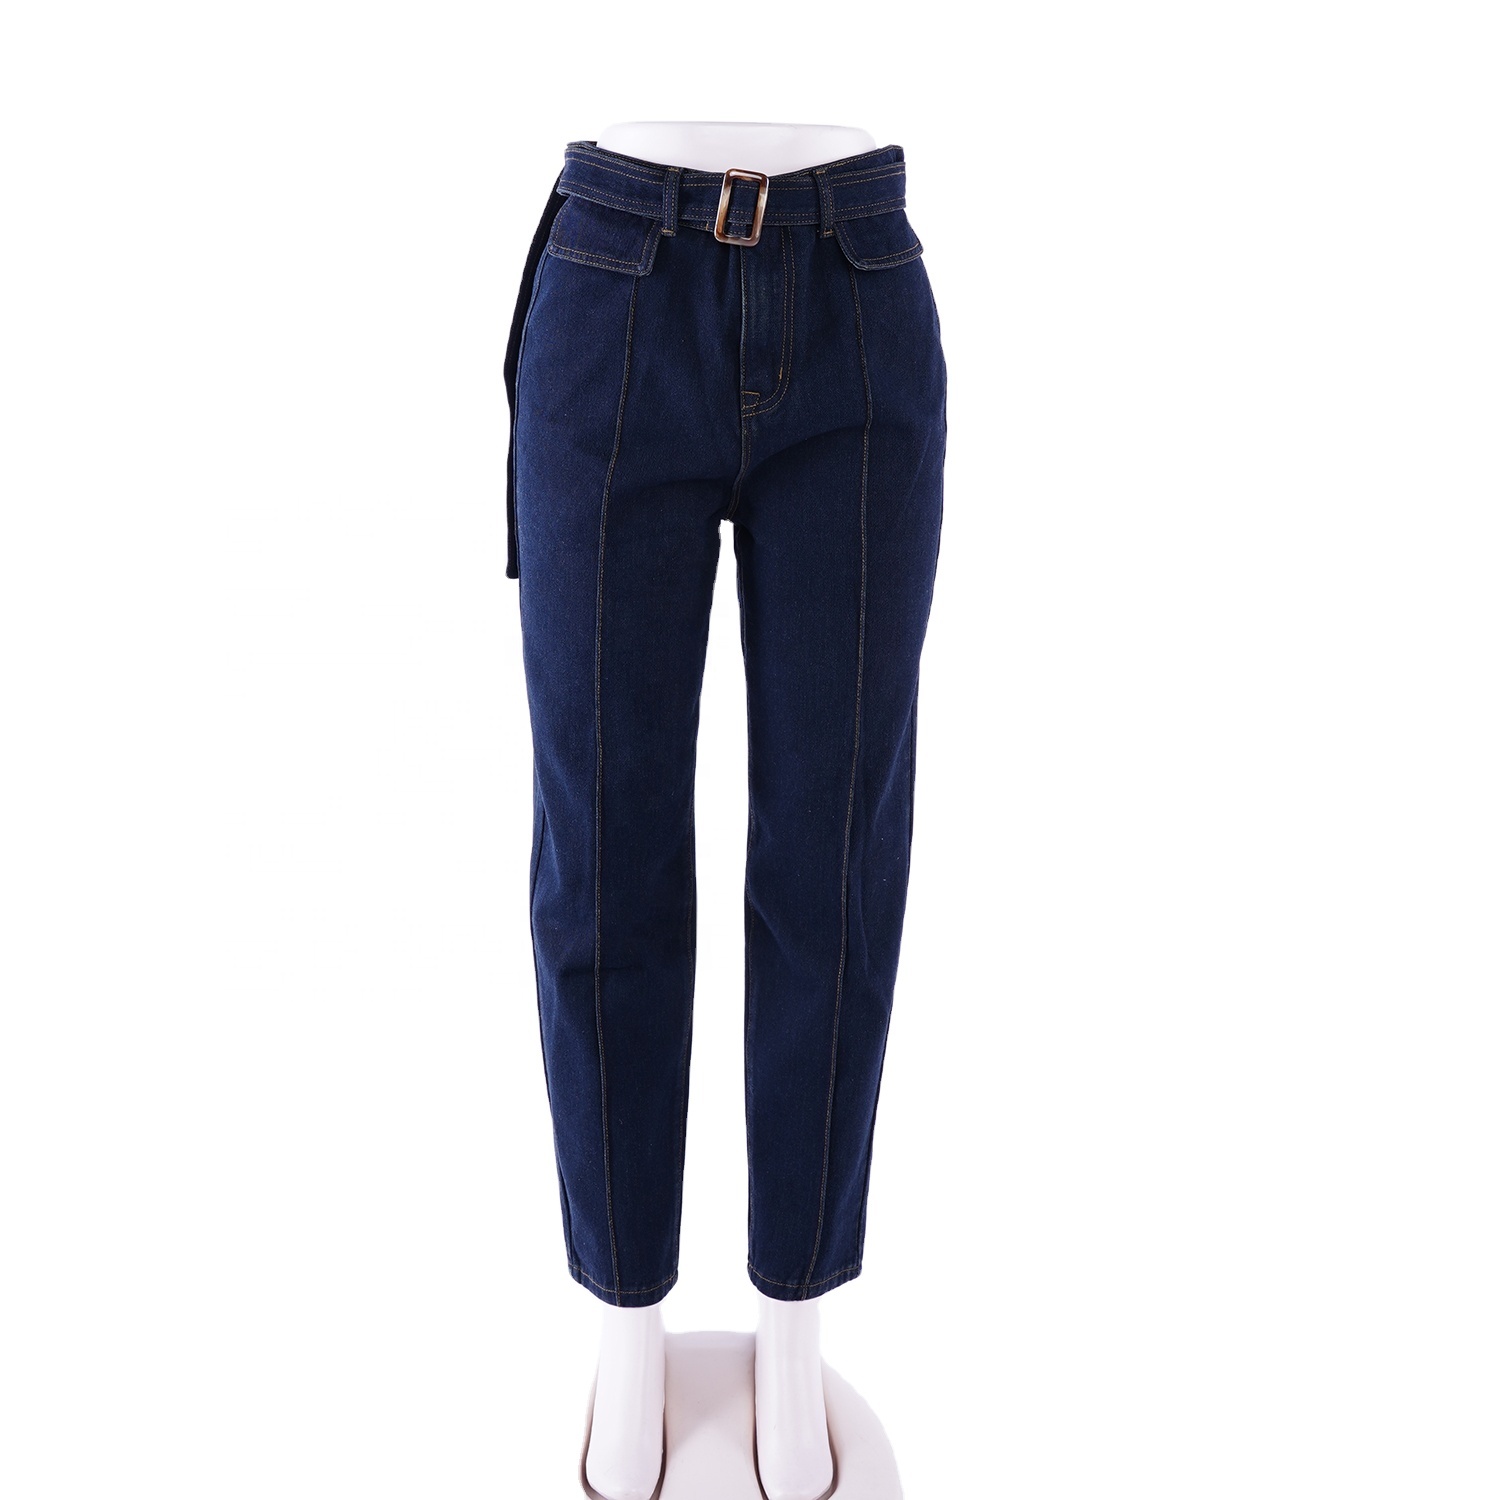 SKYKINGDOM new design denim jeans dark blue retro straight style with waist belt women jeans